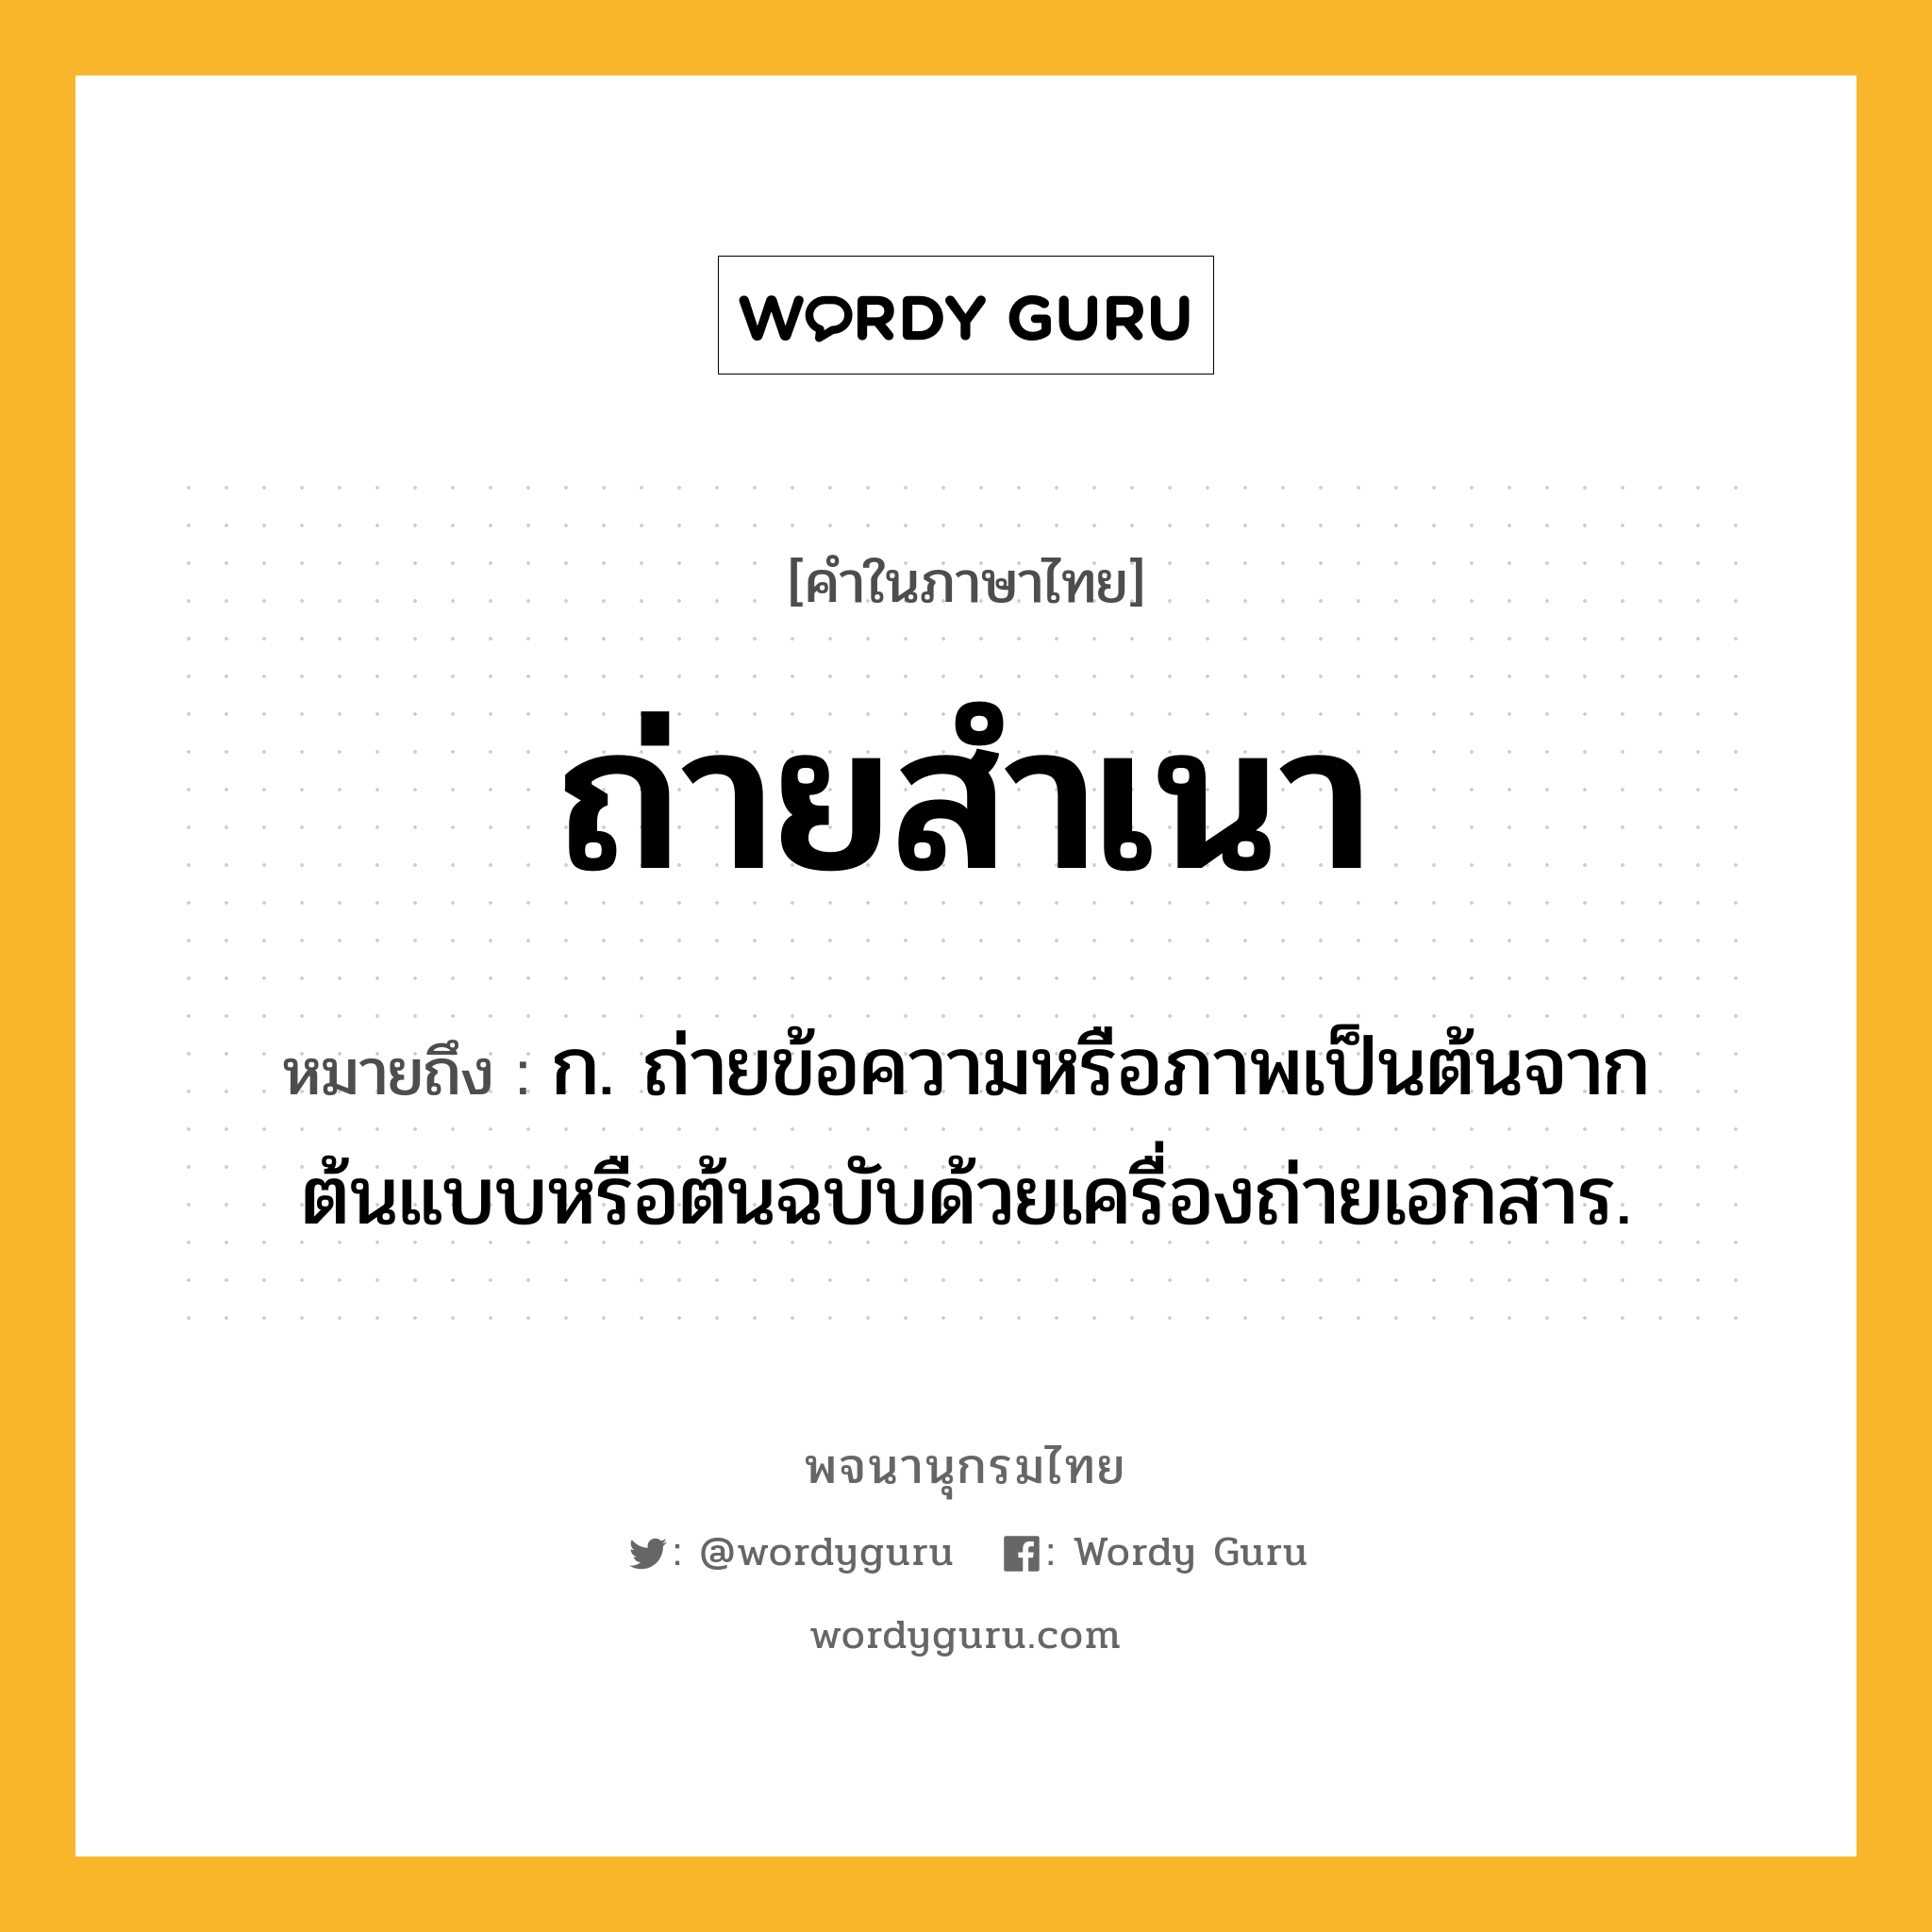 ถ่ายสำเนา ความหมาย หมายถึงอะไร?, คำในภาษาไทย ถ่ายสำเนา หมายถึง ก. ถ่ายข้อความหรือภาพเป็นต้นจากต้นแบบหรือต้นฉบับด้วยเครื่องถ่ายเอกสาร.